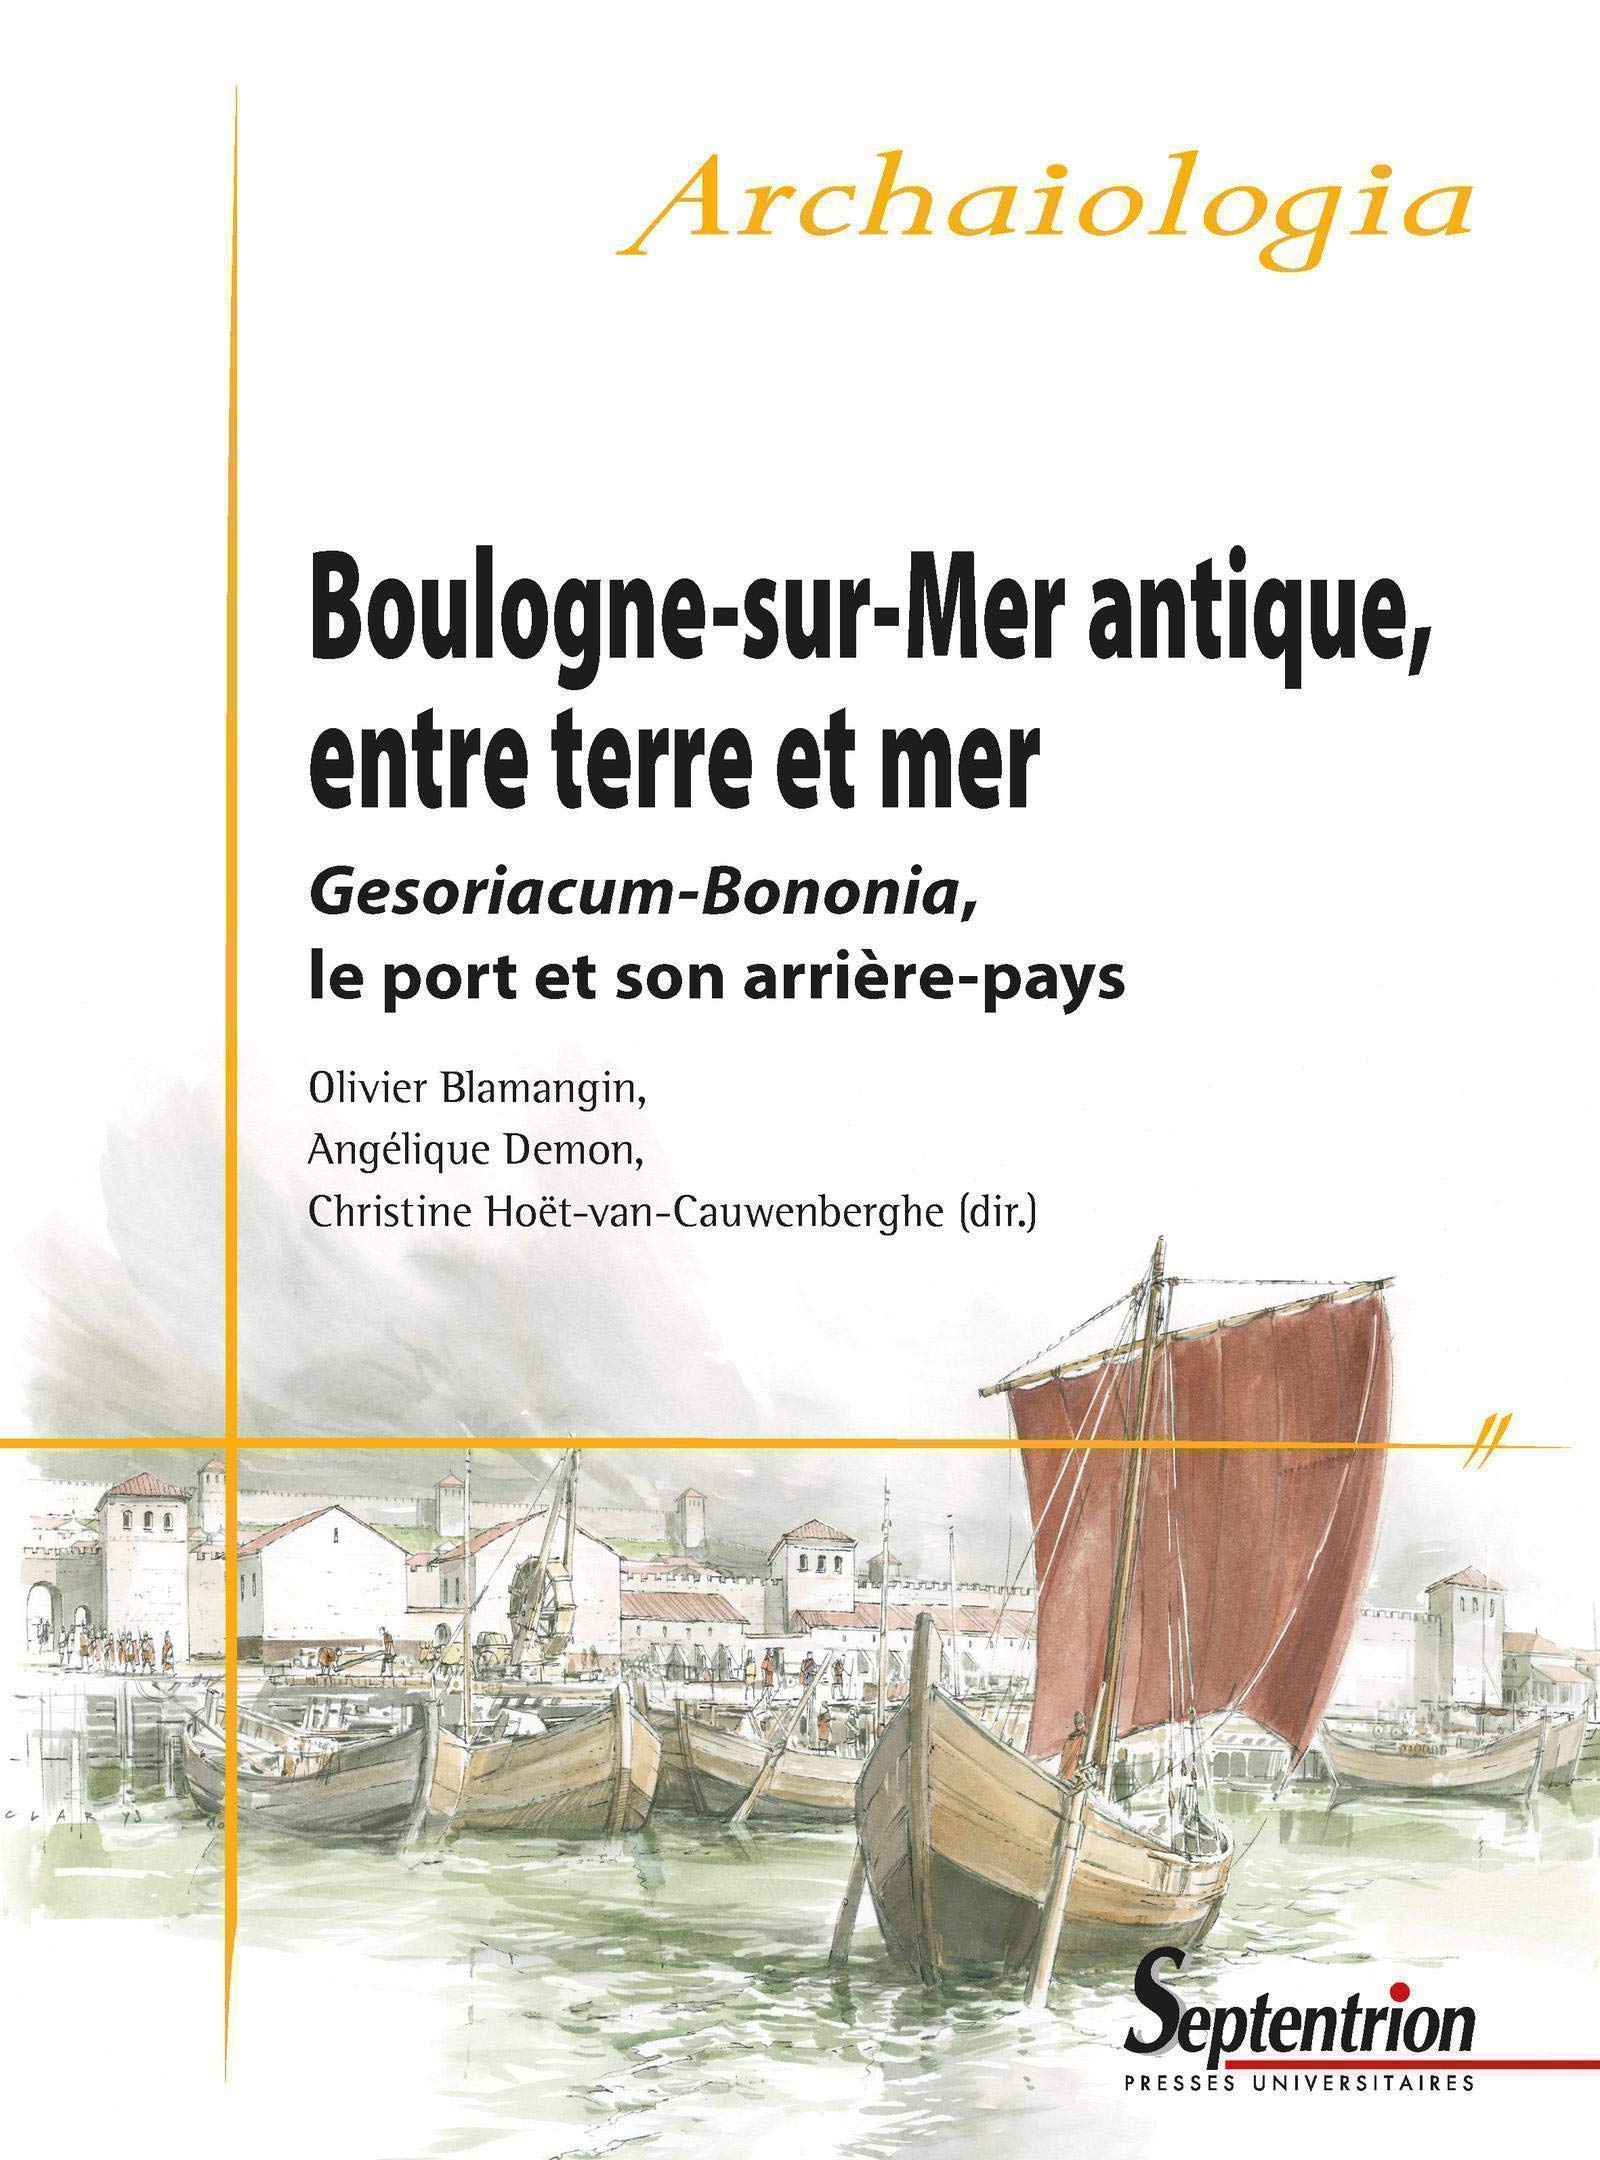 Boulogne-sur-Mer antique, entre terre et mer. Gesoriacum-Bononia, le port et son arrière-pays, 2020, 416 p.